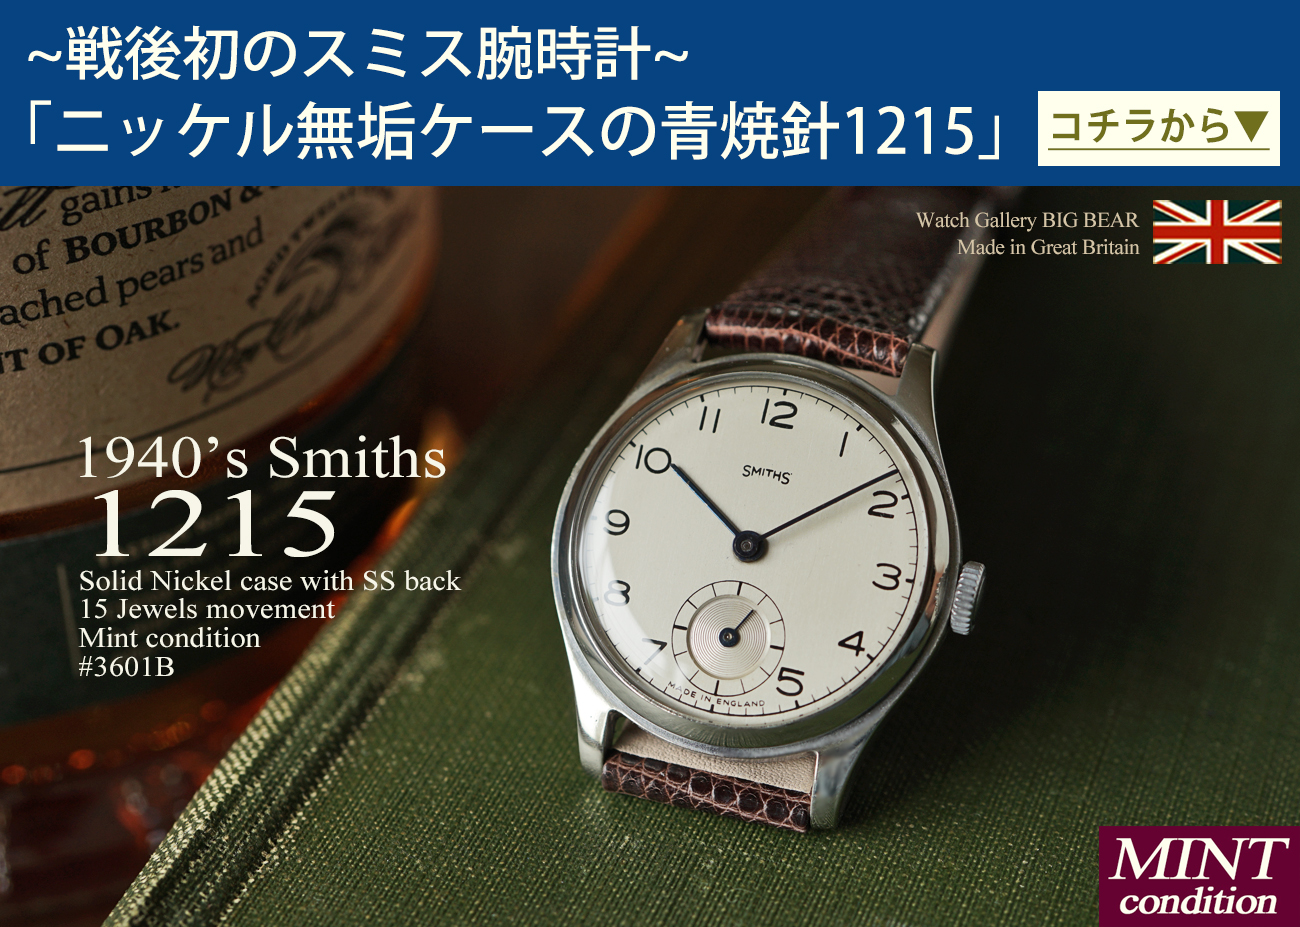 英国 スミス ヴィンテージ 時計 腕時計 専門店 ウォッチギャラリー 